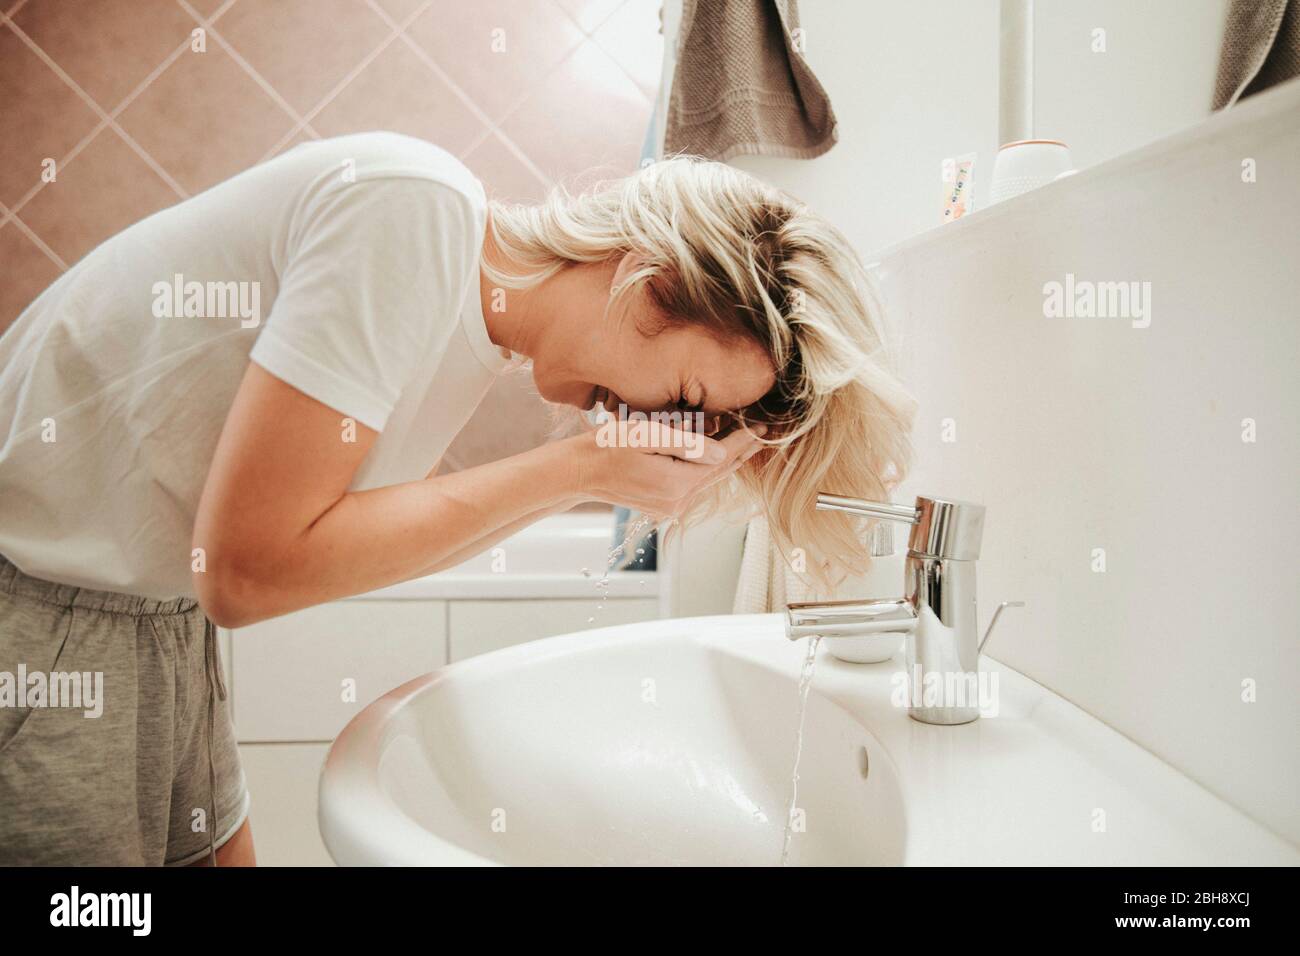 Frau im Badezimmer, wäscht ihr Gesicht Stock Photo